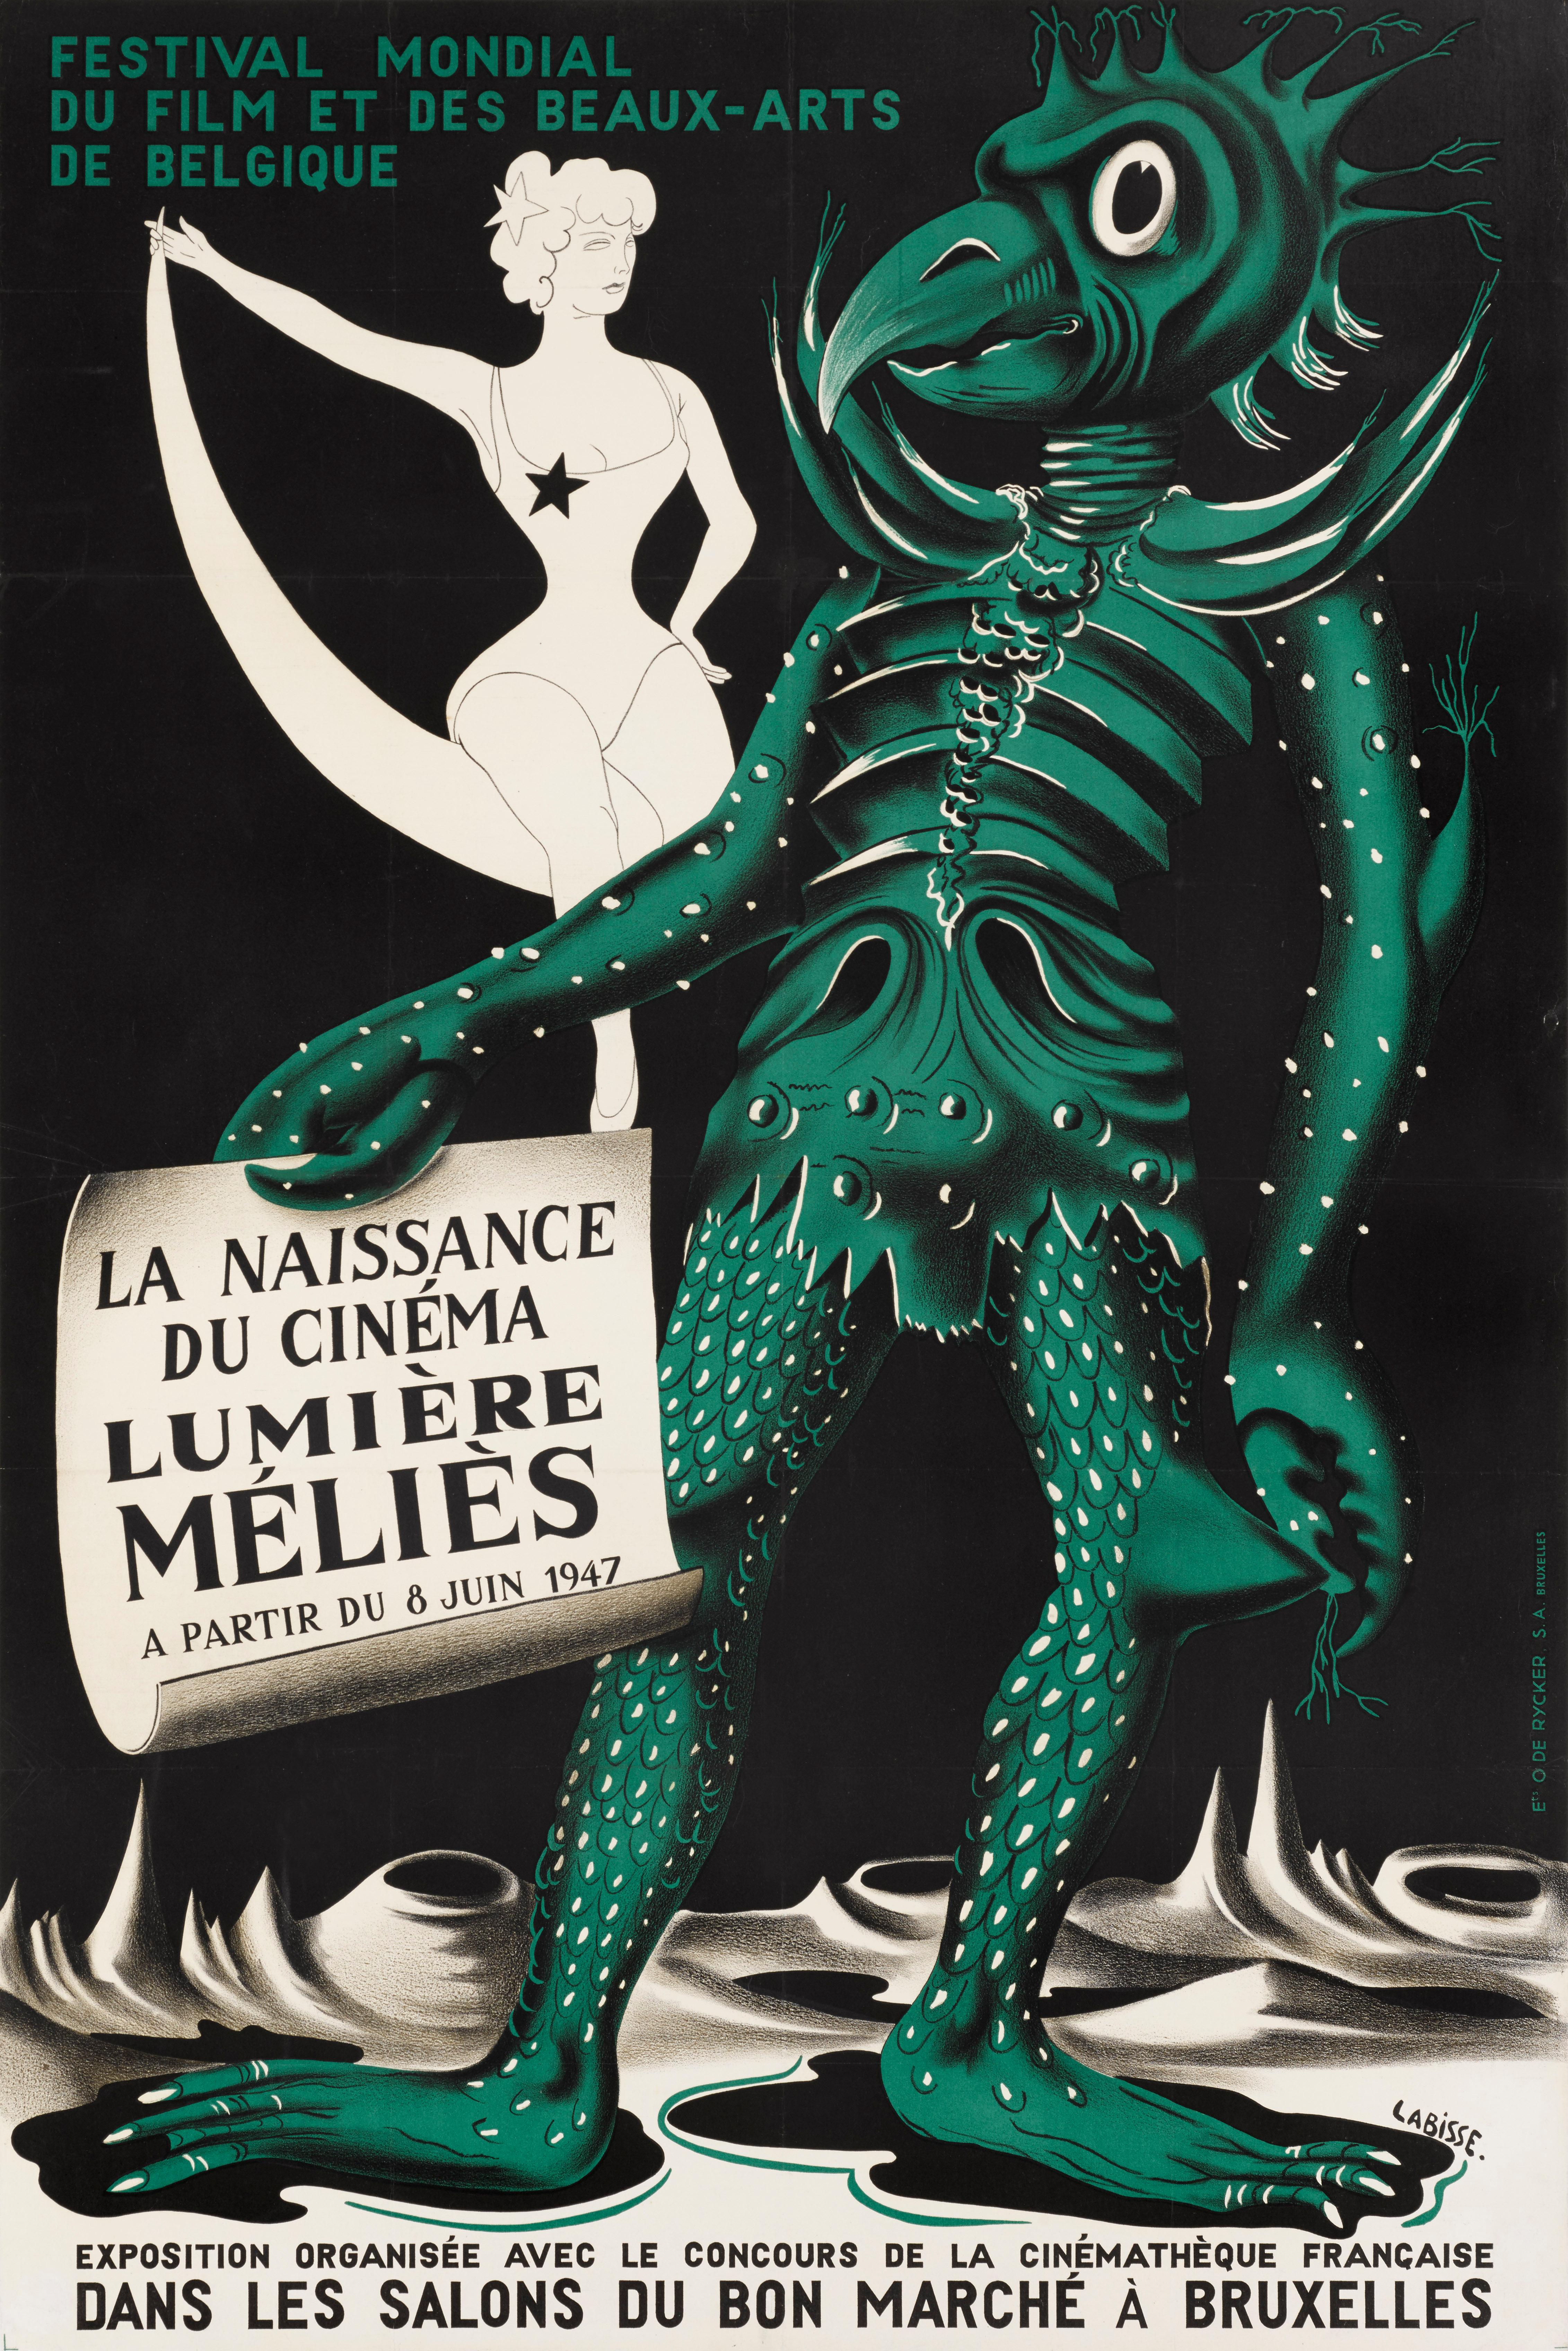 Original Belgian film poster for the Festival Mondial du Film Beau-Arts de Belgique (La Naissance du Cinema Lumiere Melies)
Mondial du Film et Des Beaux-Artsheld in Brussels, Belgium in June 1947, one of the first film festivals to this